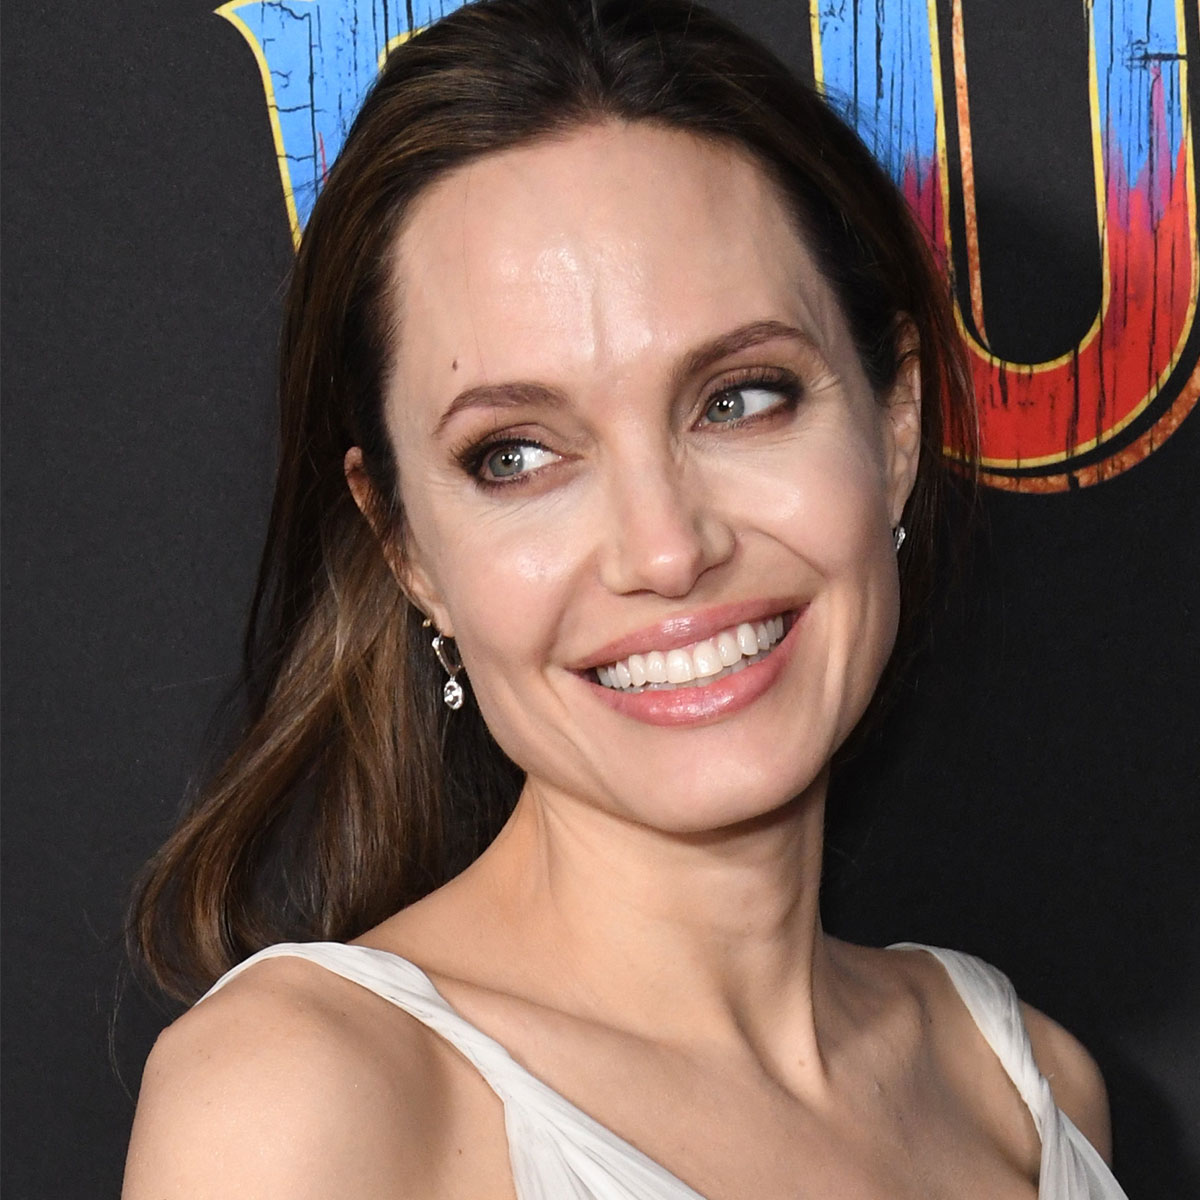 Angelina Jolie's Blond Hair in Chloé x Atelier Jolie Photos